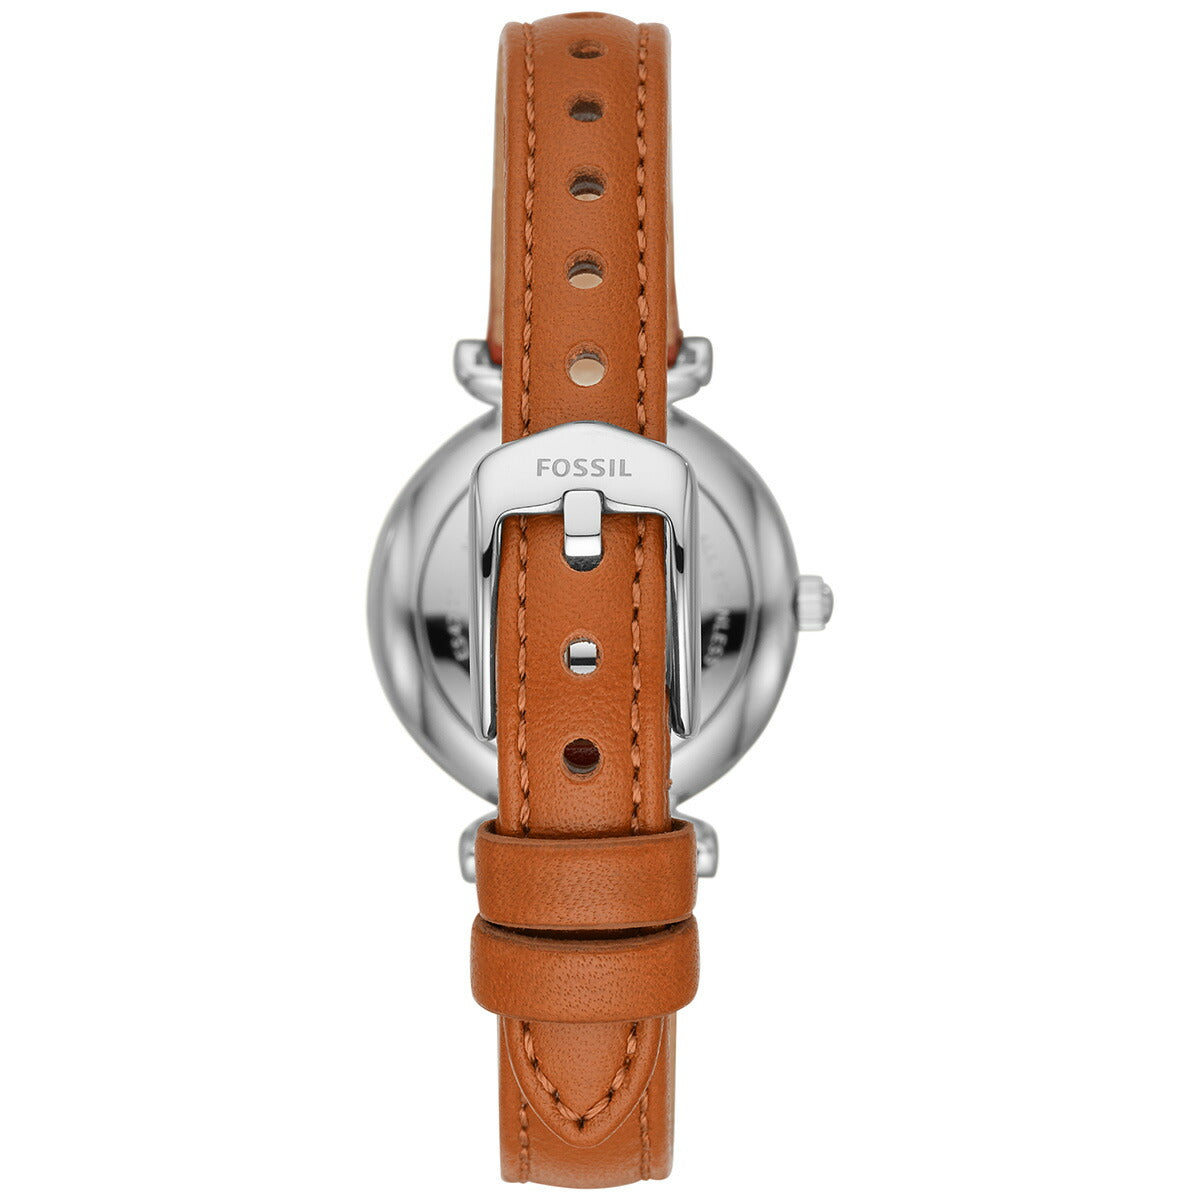 フォッシル FOSSIL 腕時計 レディ―ス カーリーミニ CARLIE MINI ES4701